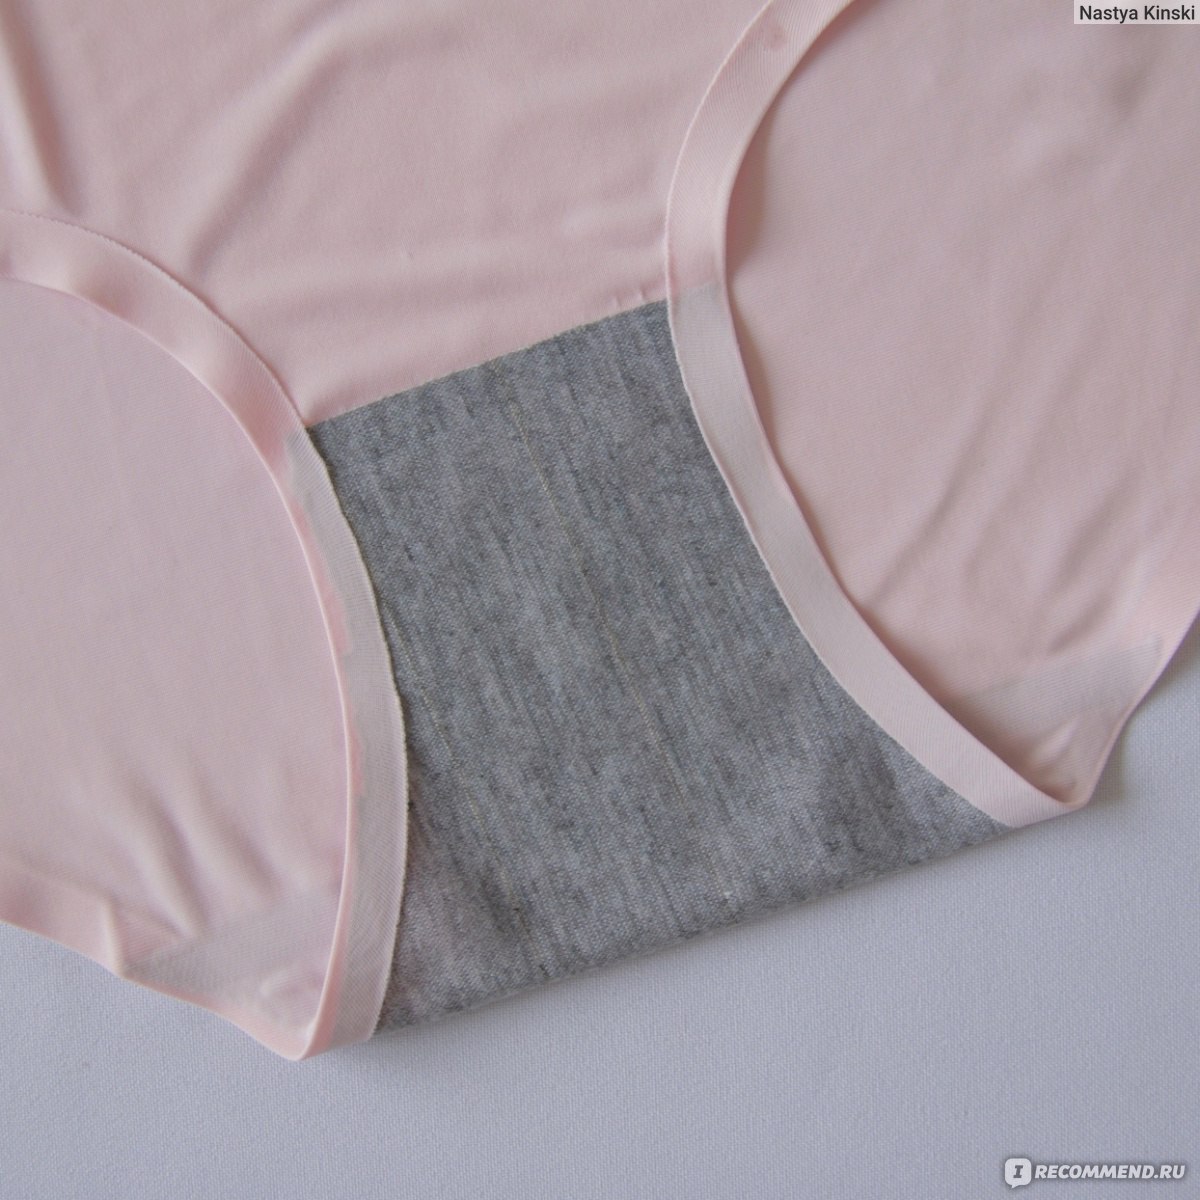 BZEL 3 Pieces/lot Women Sexy Panties Breathable Transparent